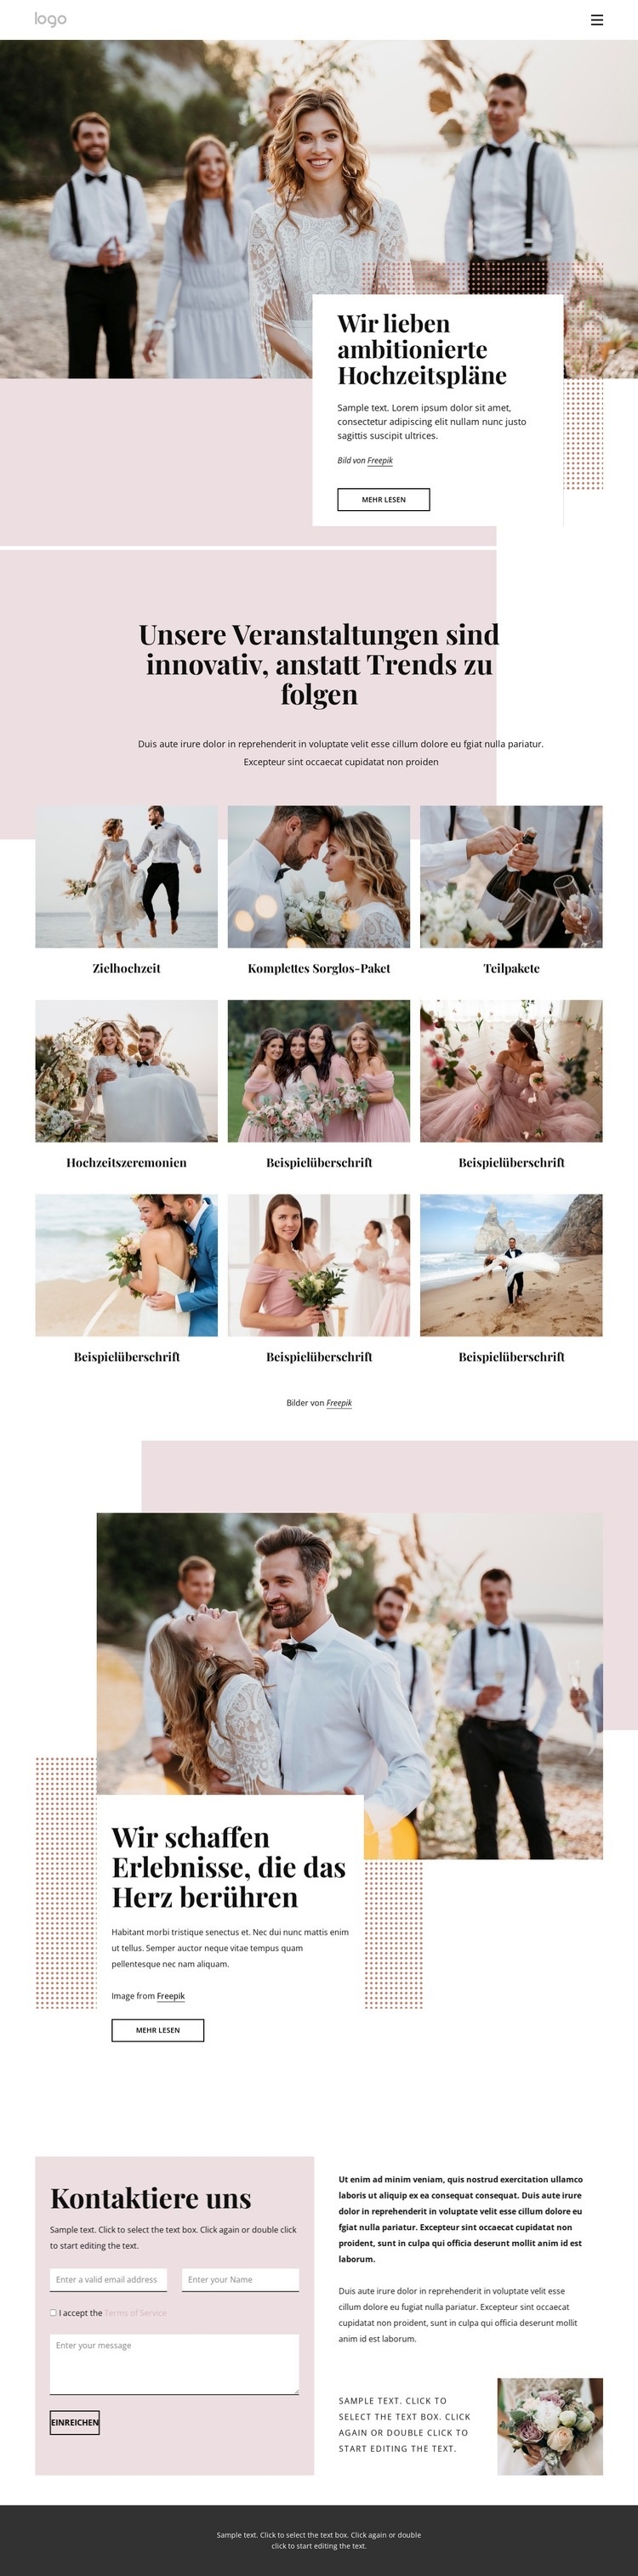 Wir lieben ambitionierte Hochzeitspläne Website-Modell